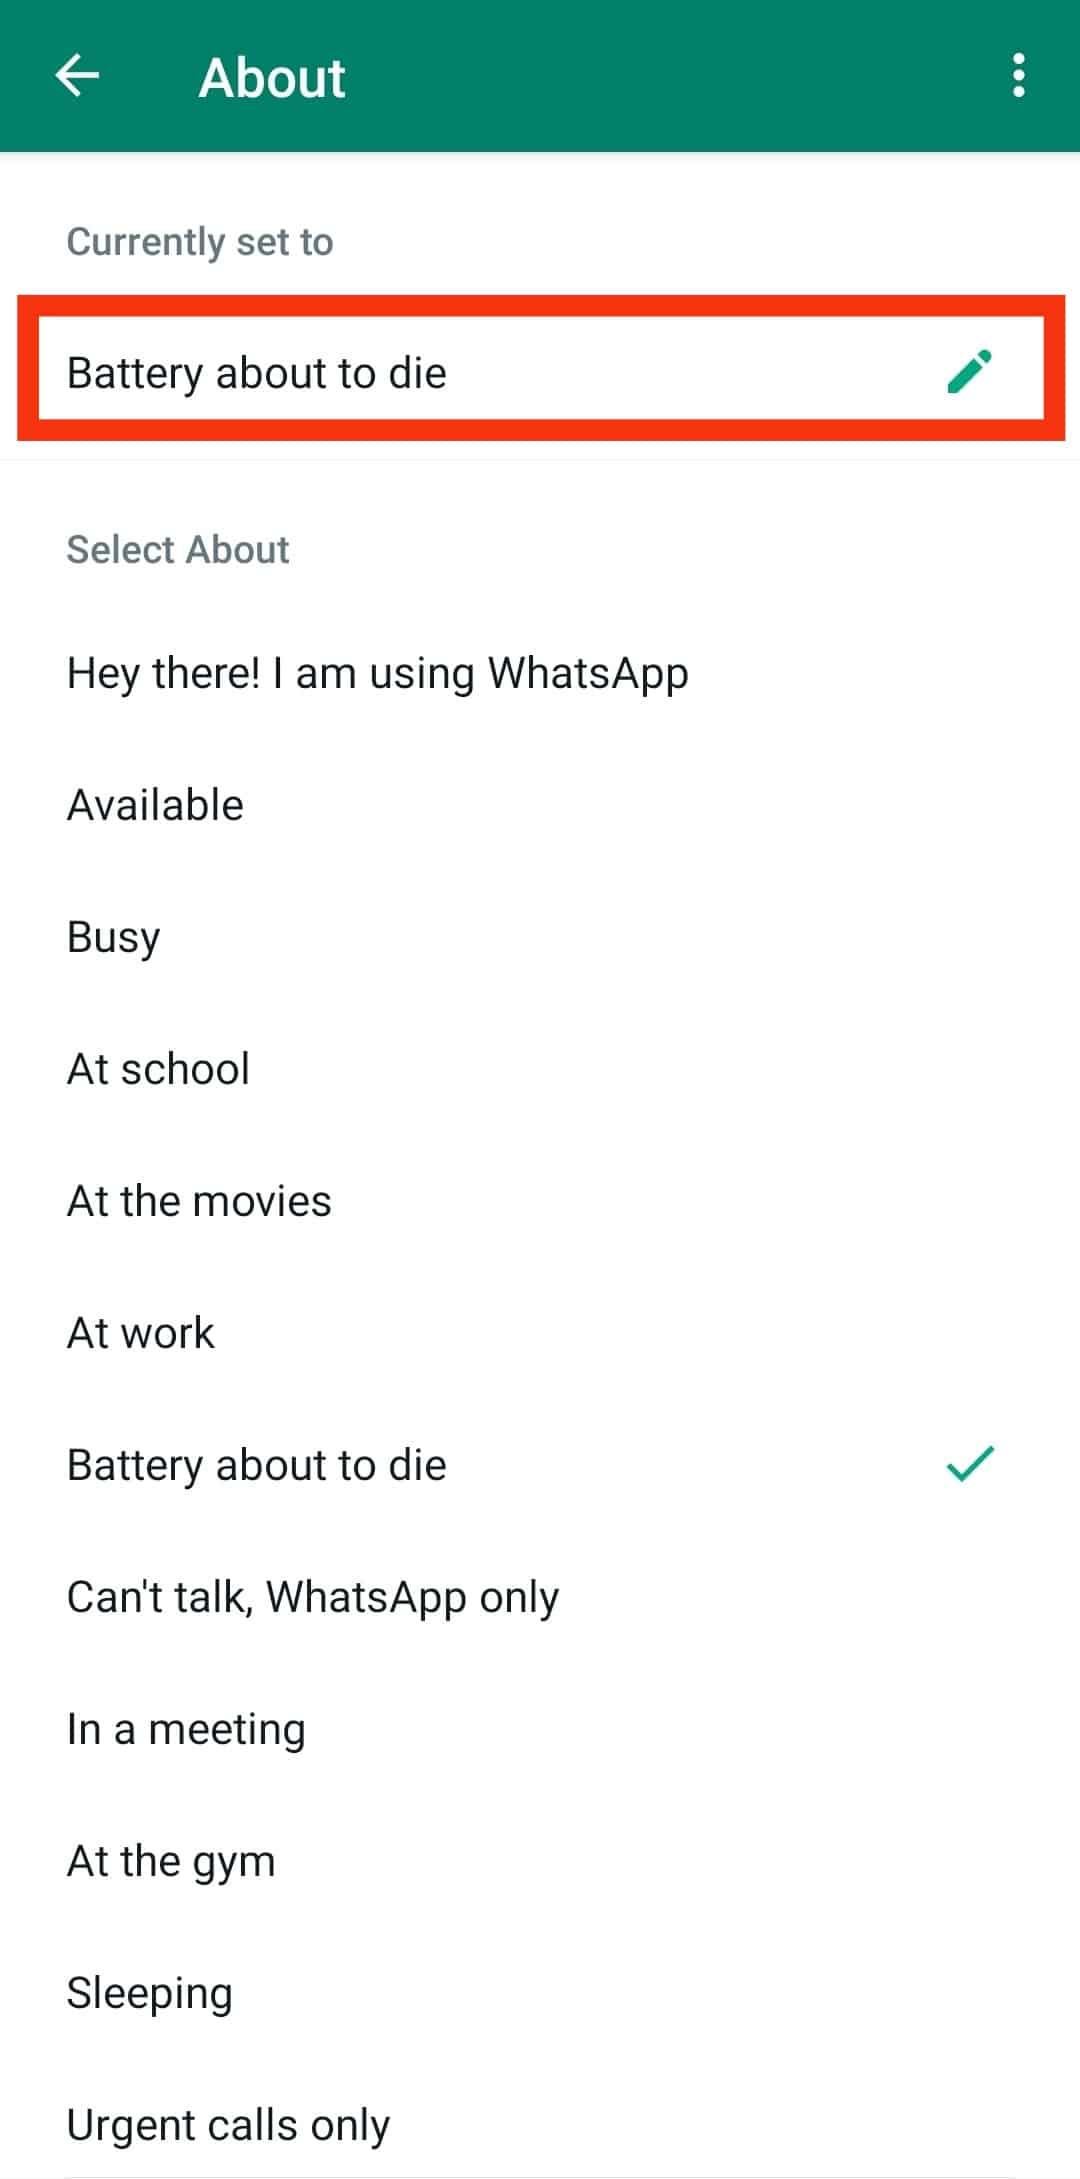 ¿Qué significa "Solo llamadas urgentes" en WhatsApp?